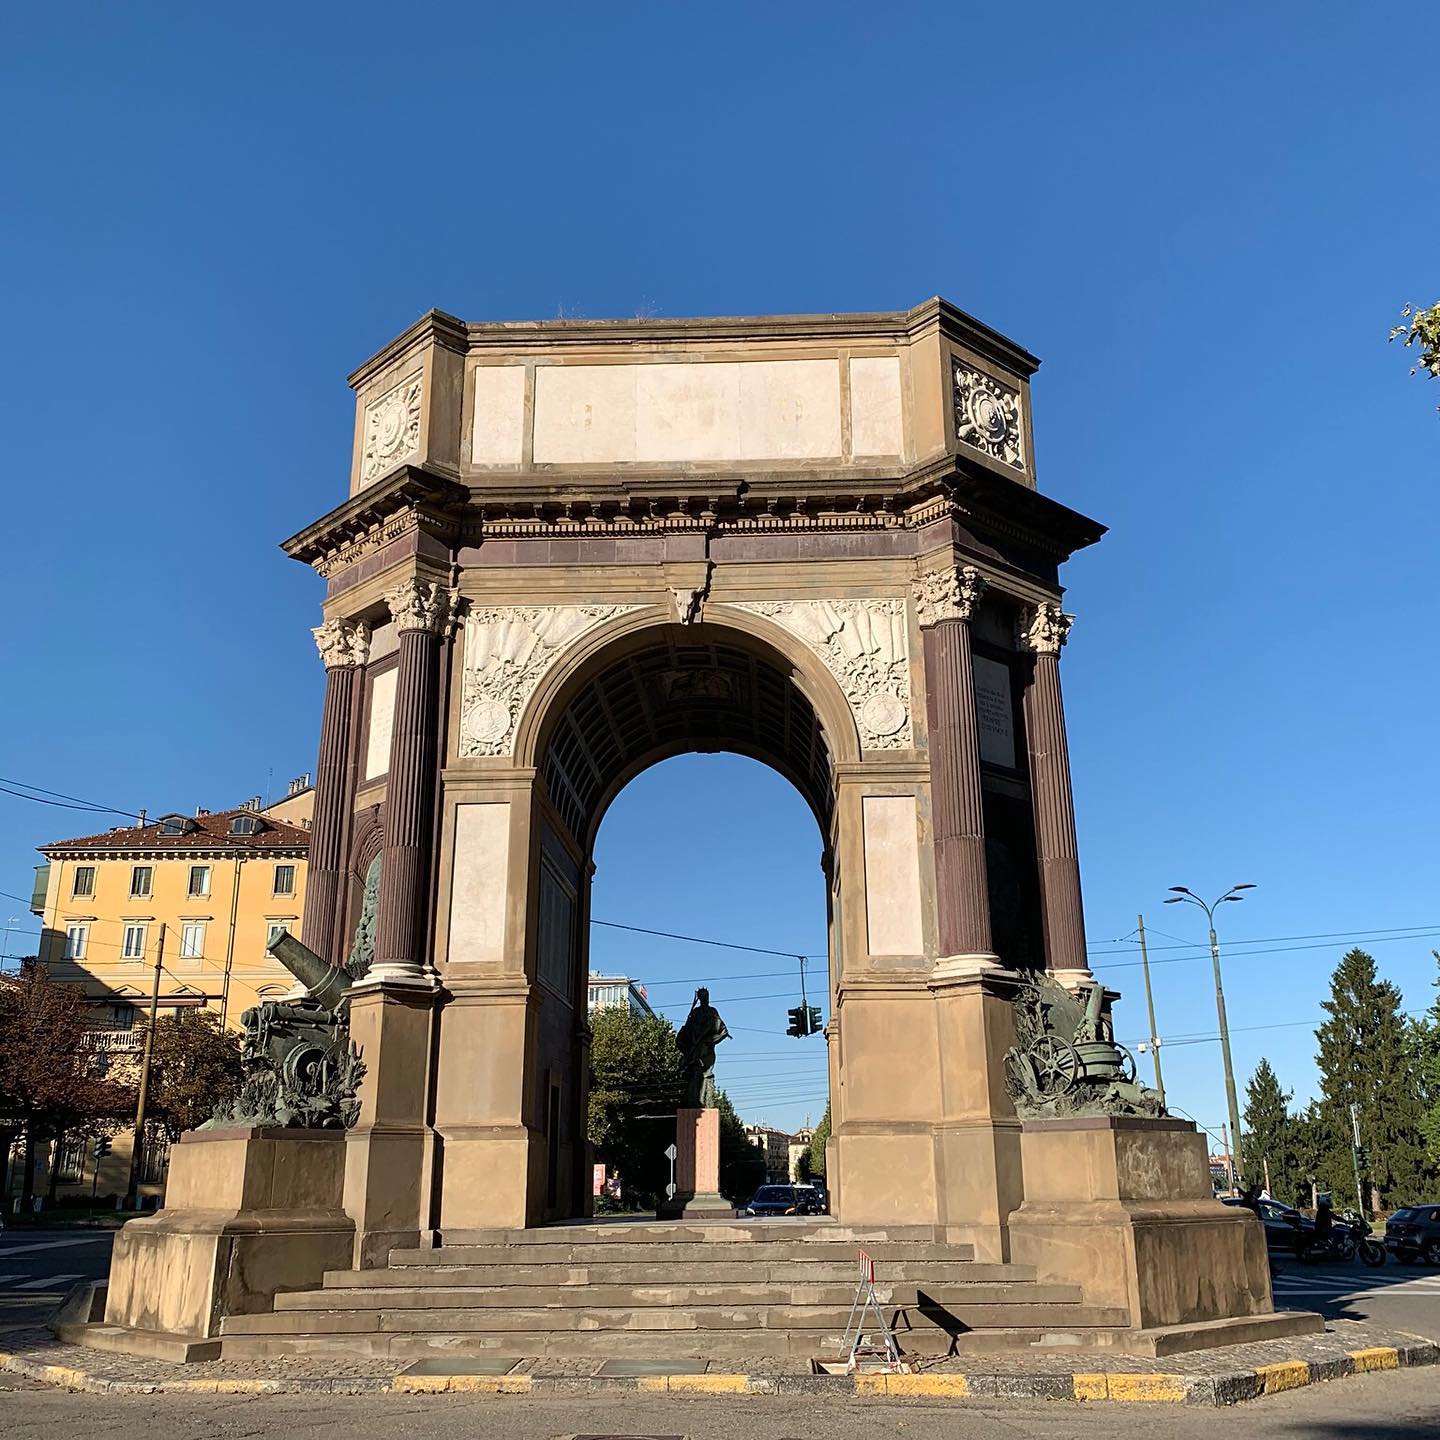 🇺🇸 Monumental arch to the Artillery (or "Arco di Trionfo") erected in Turin in 1930 and dedicated to the Corps of Artillery.

🇮🇹 Arco monumentale all'Arma di Artiglieria (o "Arco di Trionfo") eretto a Torino nel 1930 e dedicato al Corpo dell'Artiglieria.